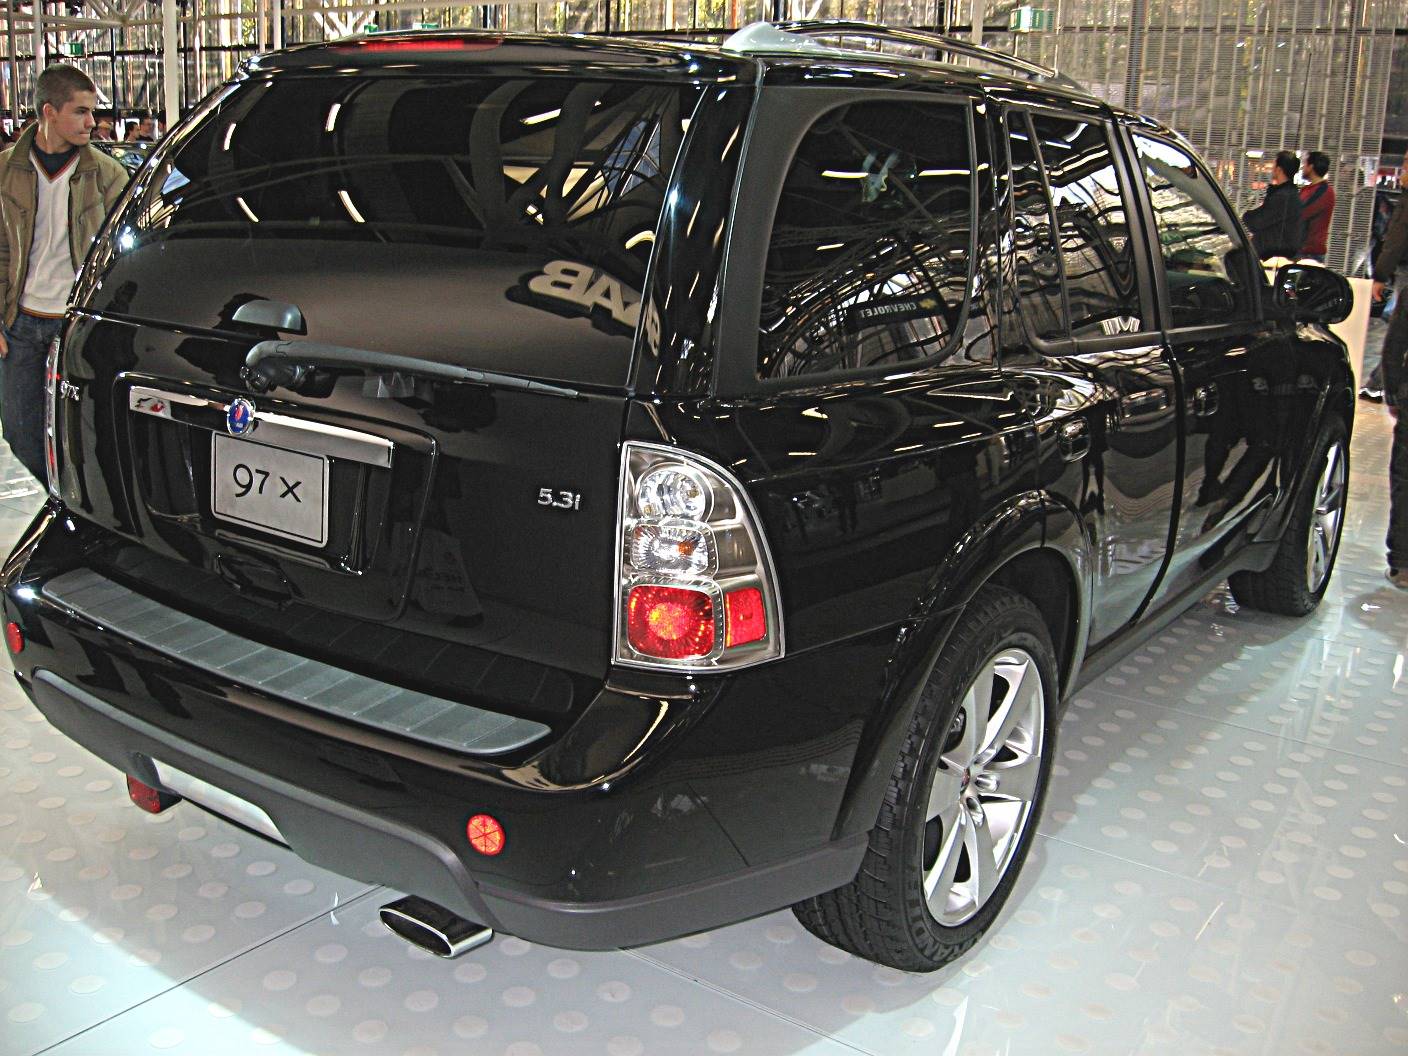 2007 Saab 9-7X 5.3i - 4dr SUV 5.3L V8 AWD auto